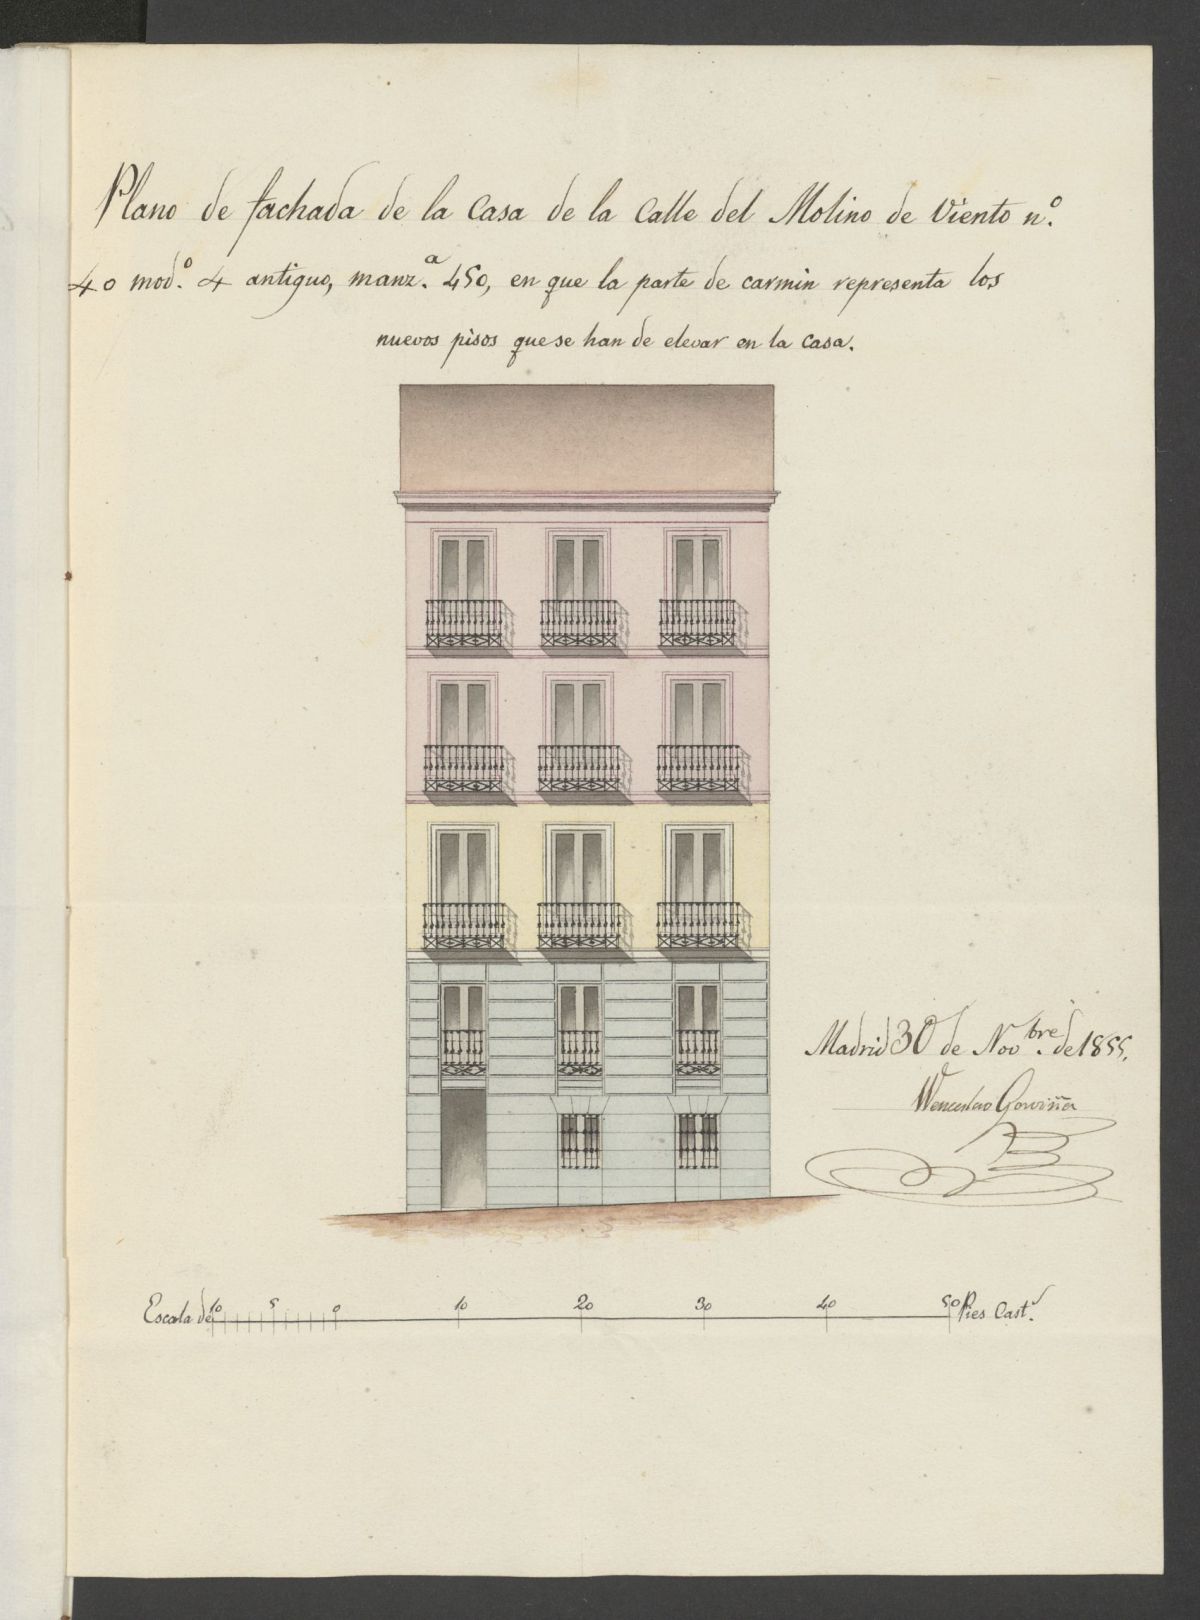 D. José de Aldagoro, sobre levantar dos pisos sobre una casa calle del Molino de Viento nº 40 moderno, manzana 450. (1855)